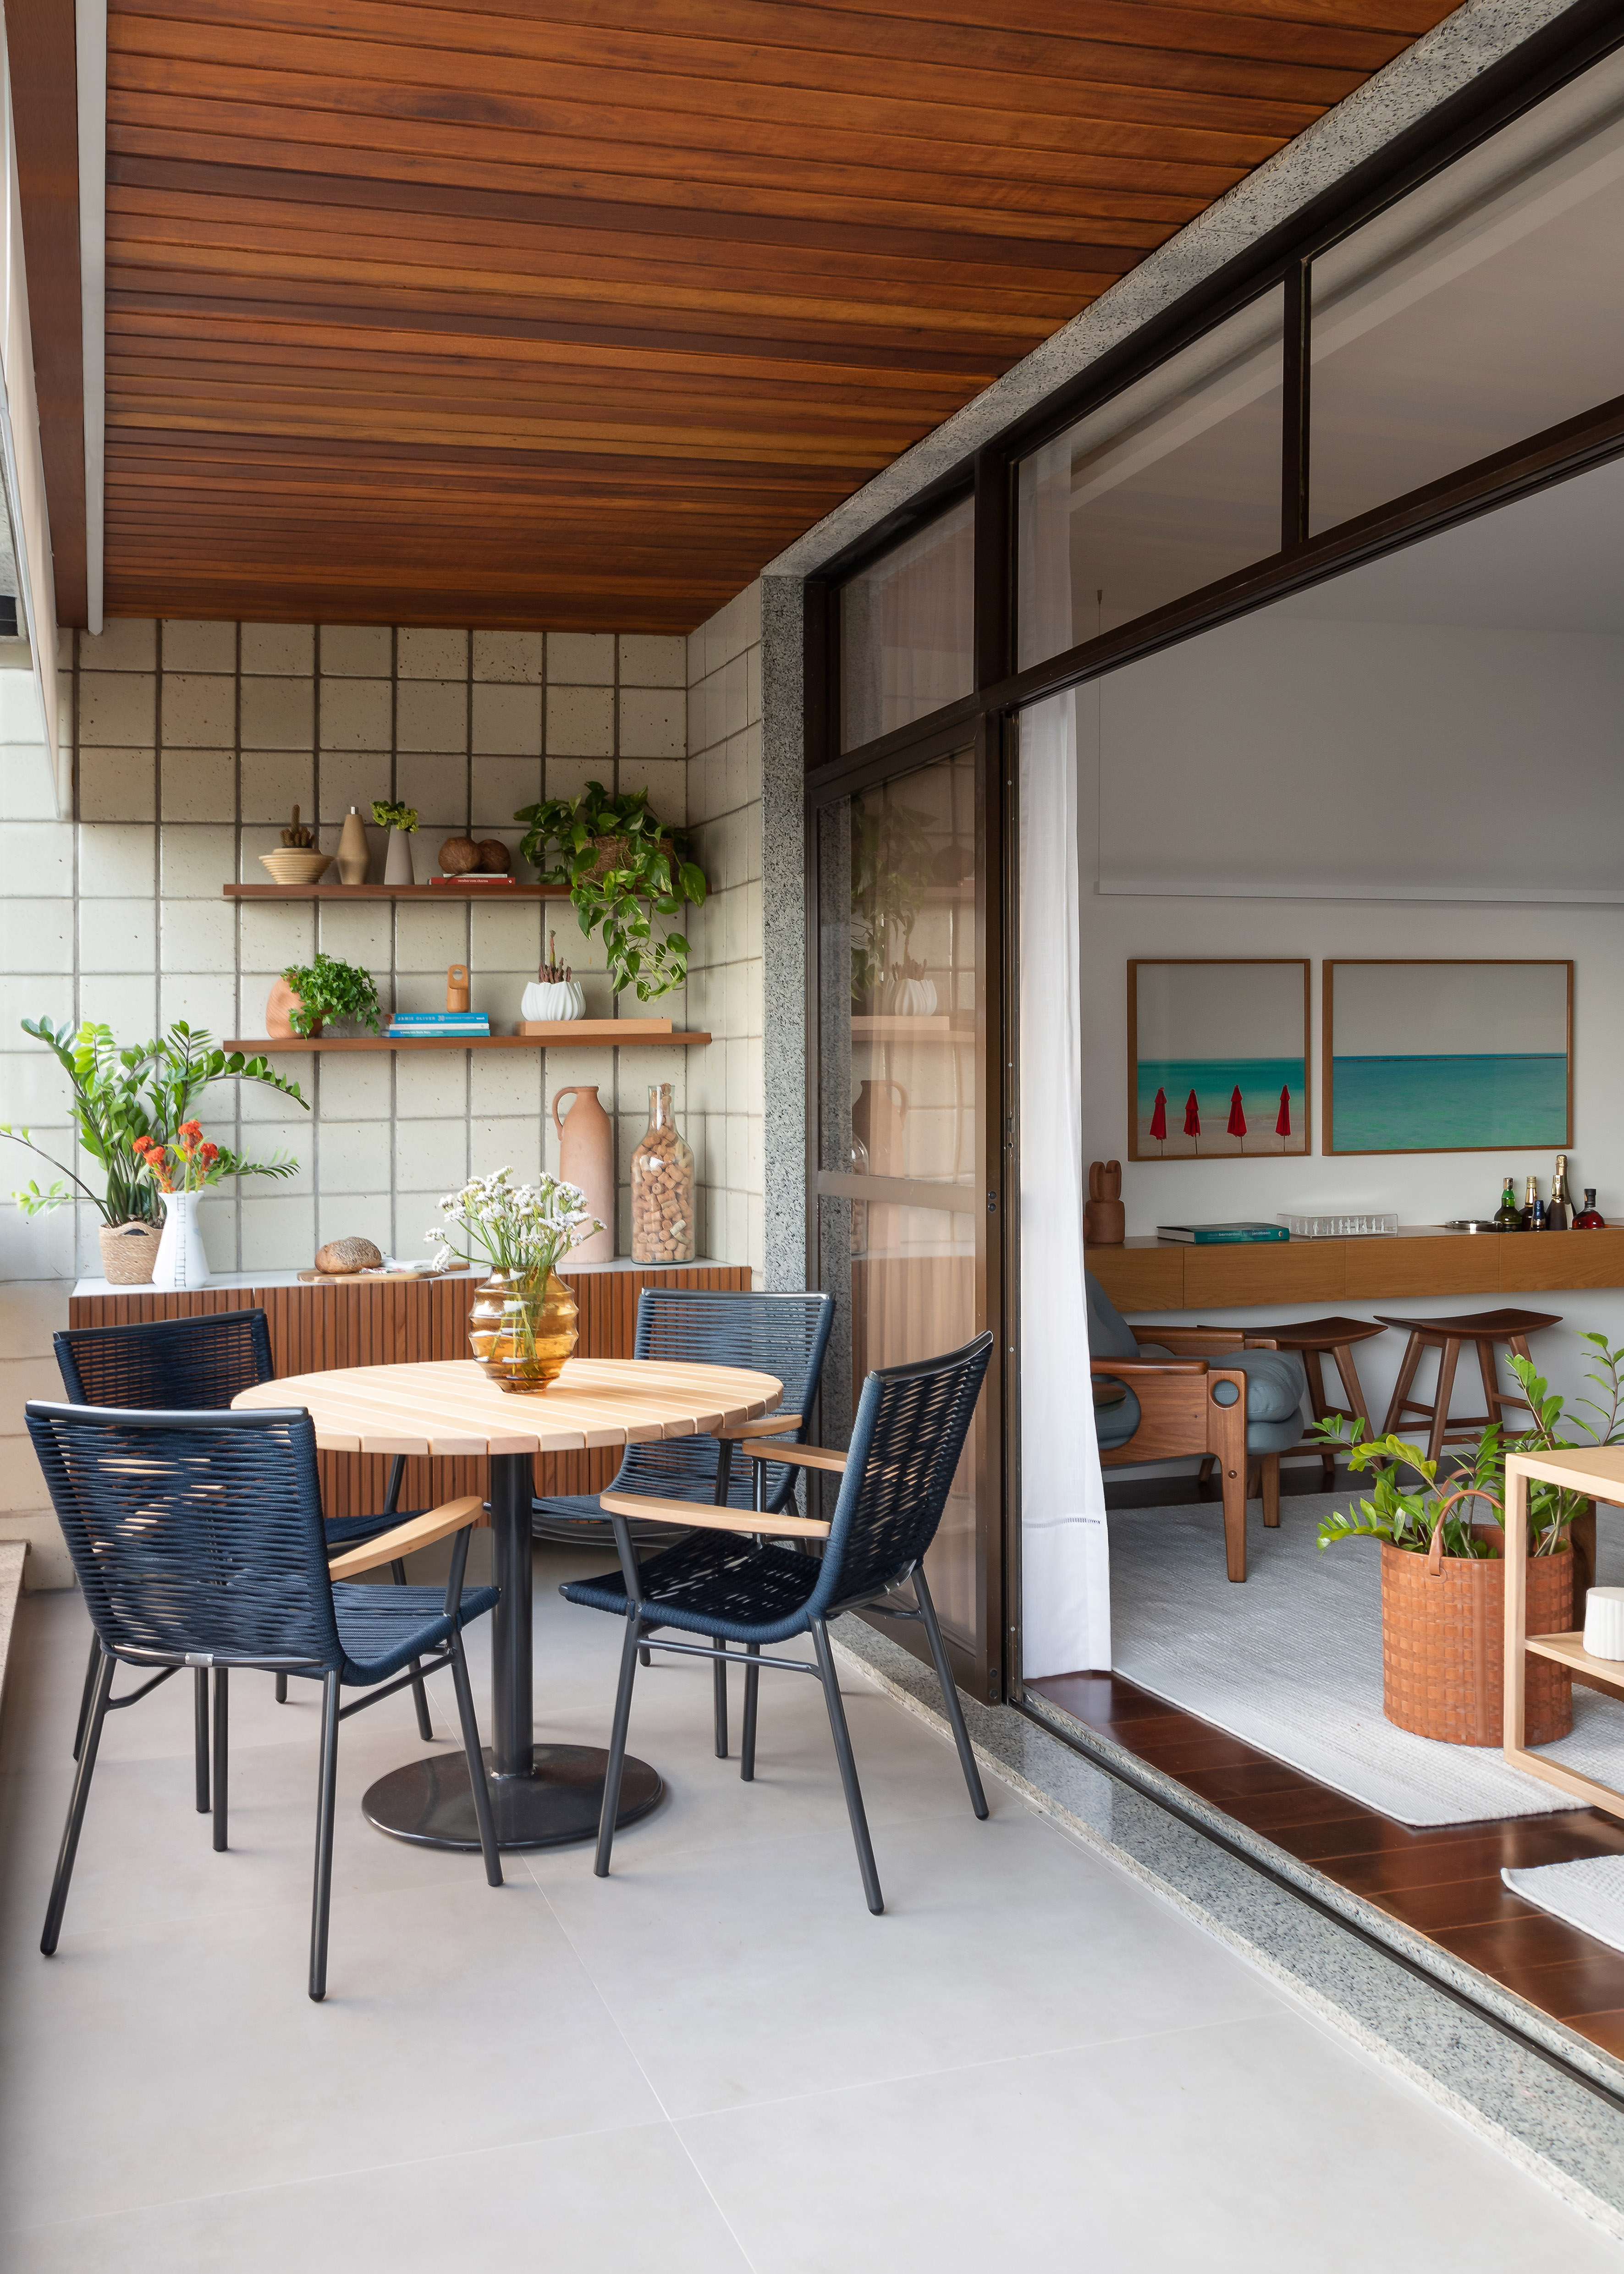 Projeto de MR Arquitetura. Na foto, varanda com mesa pequena redonda, cadeiras azuis e parede de azulejos com prateleiras com plantas.